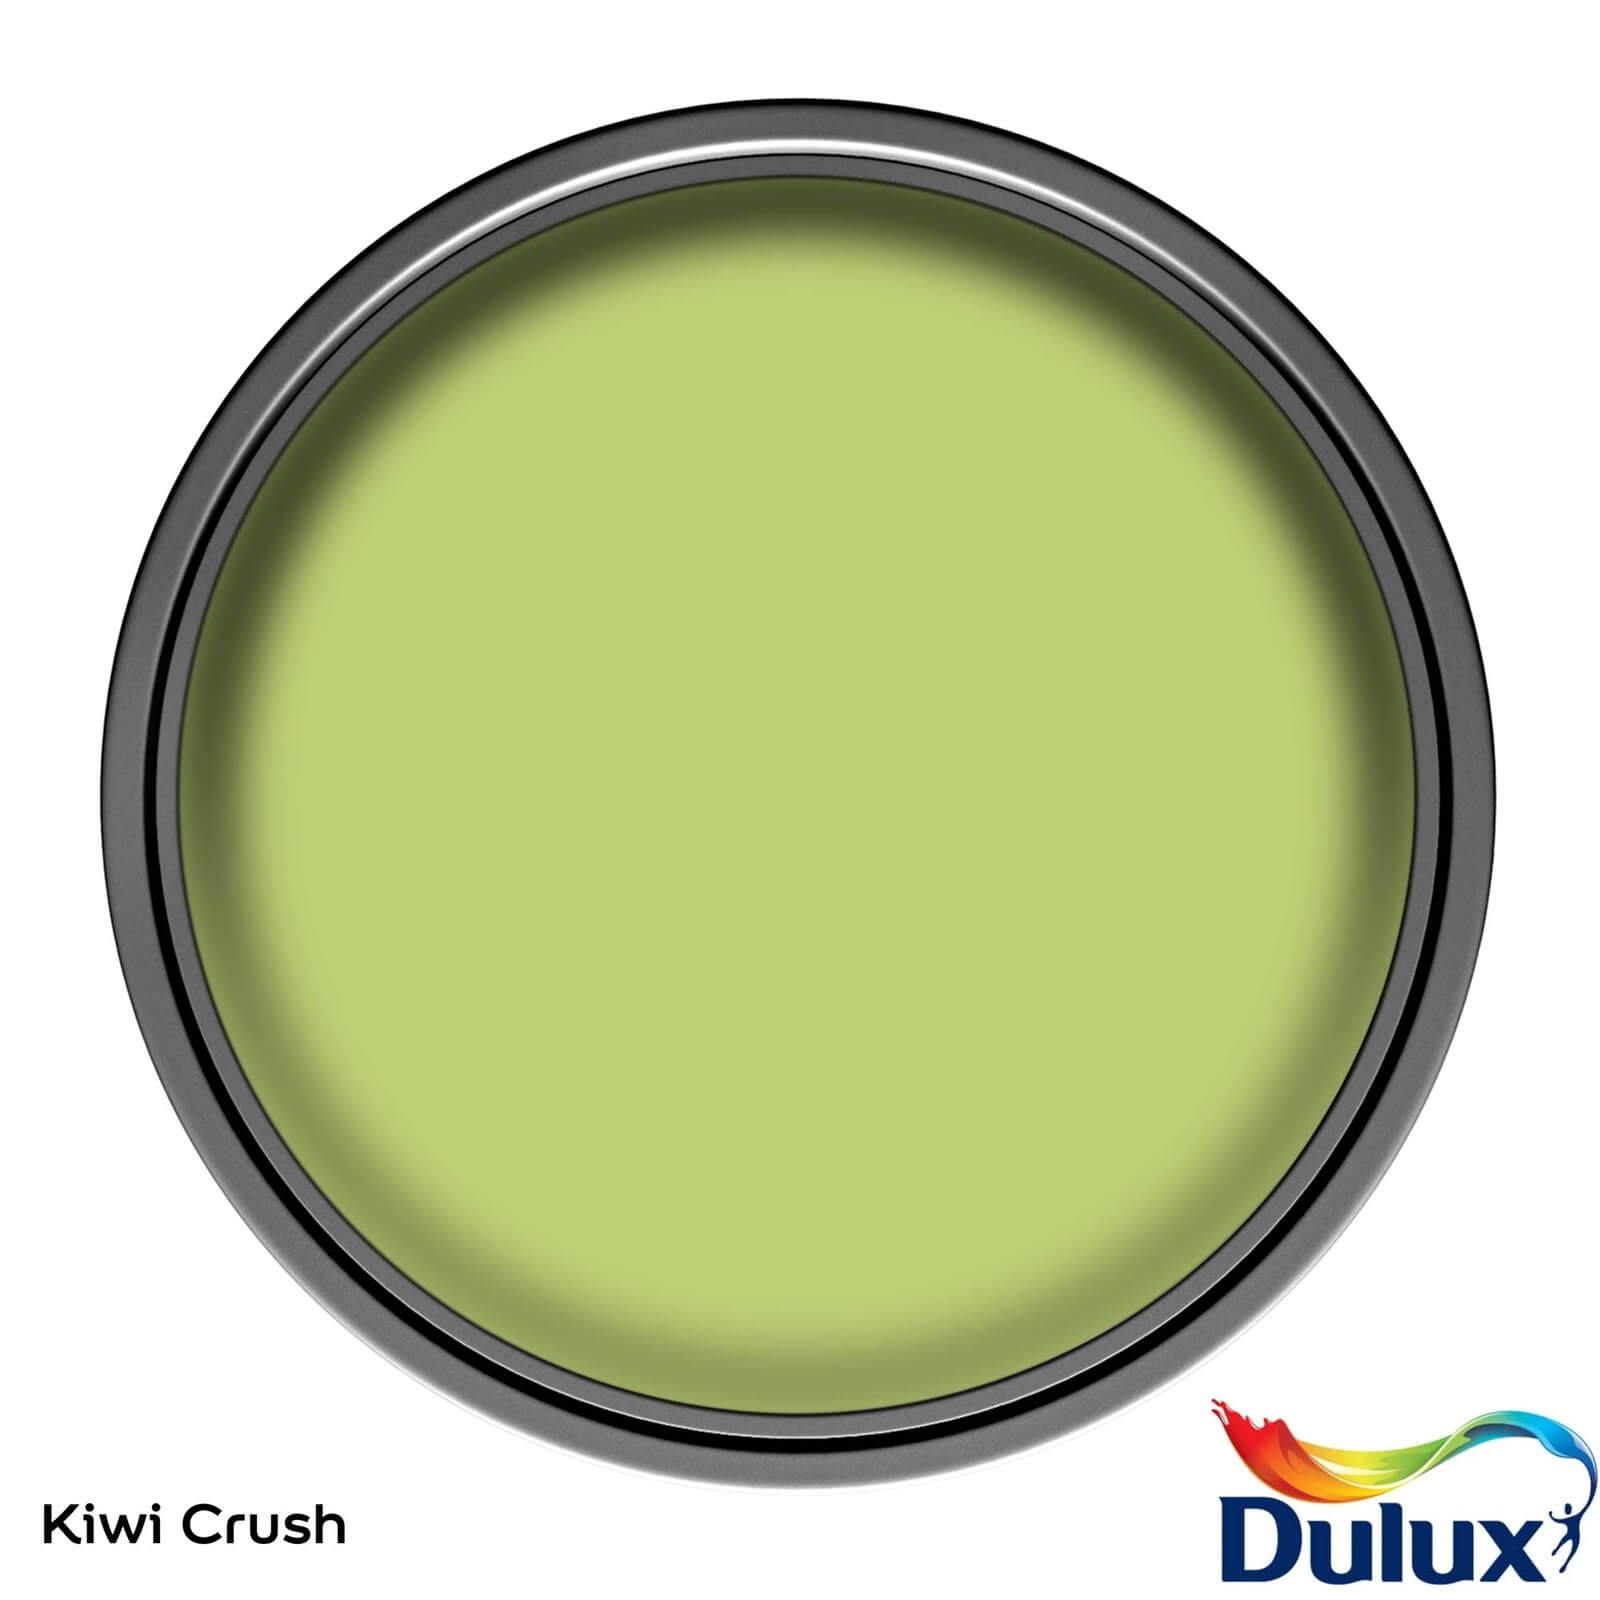 Dulux Easycare Washable & Tough Kiwi Crush - Matt - 2.5L